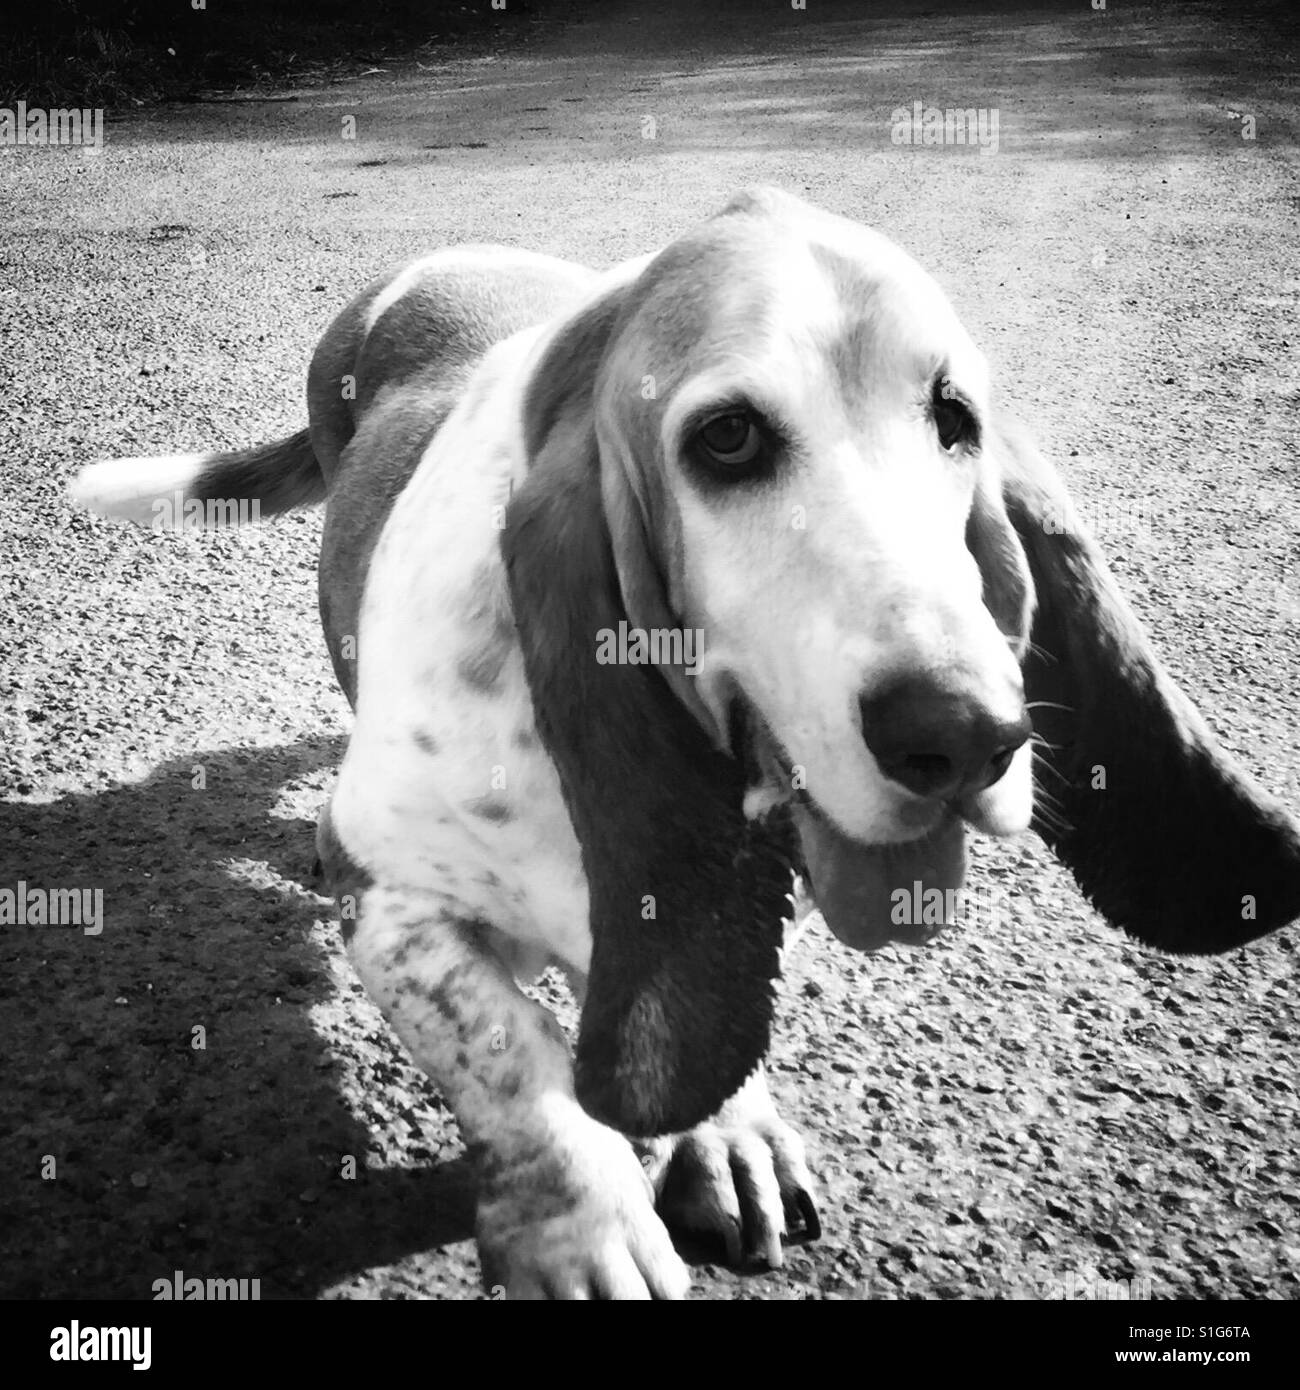 Basset hound dog walking pet dog portrait Stock Photo